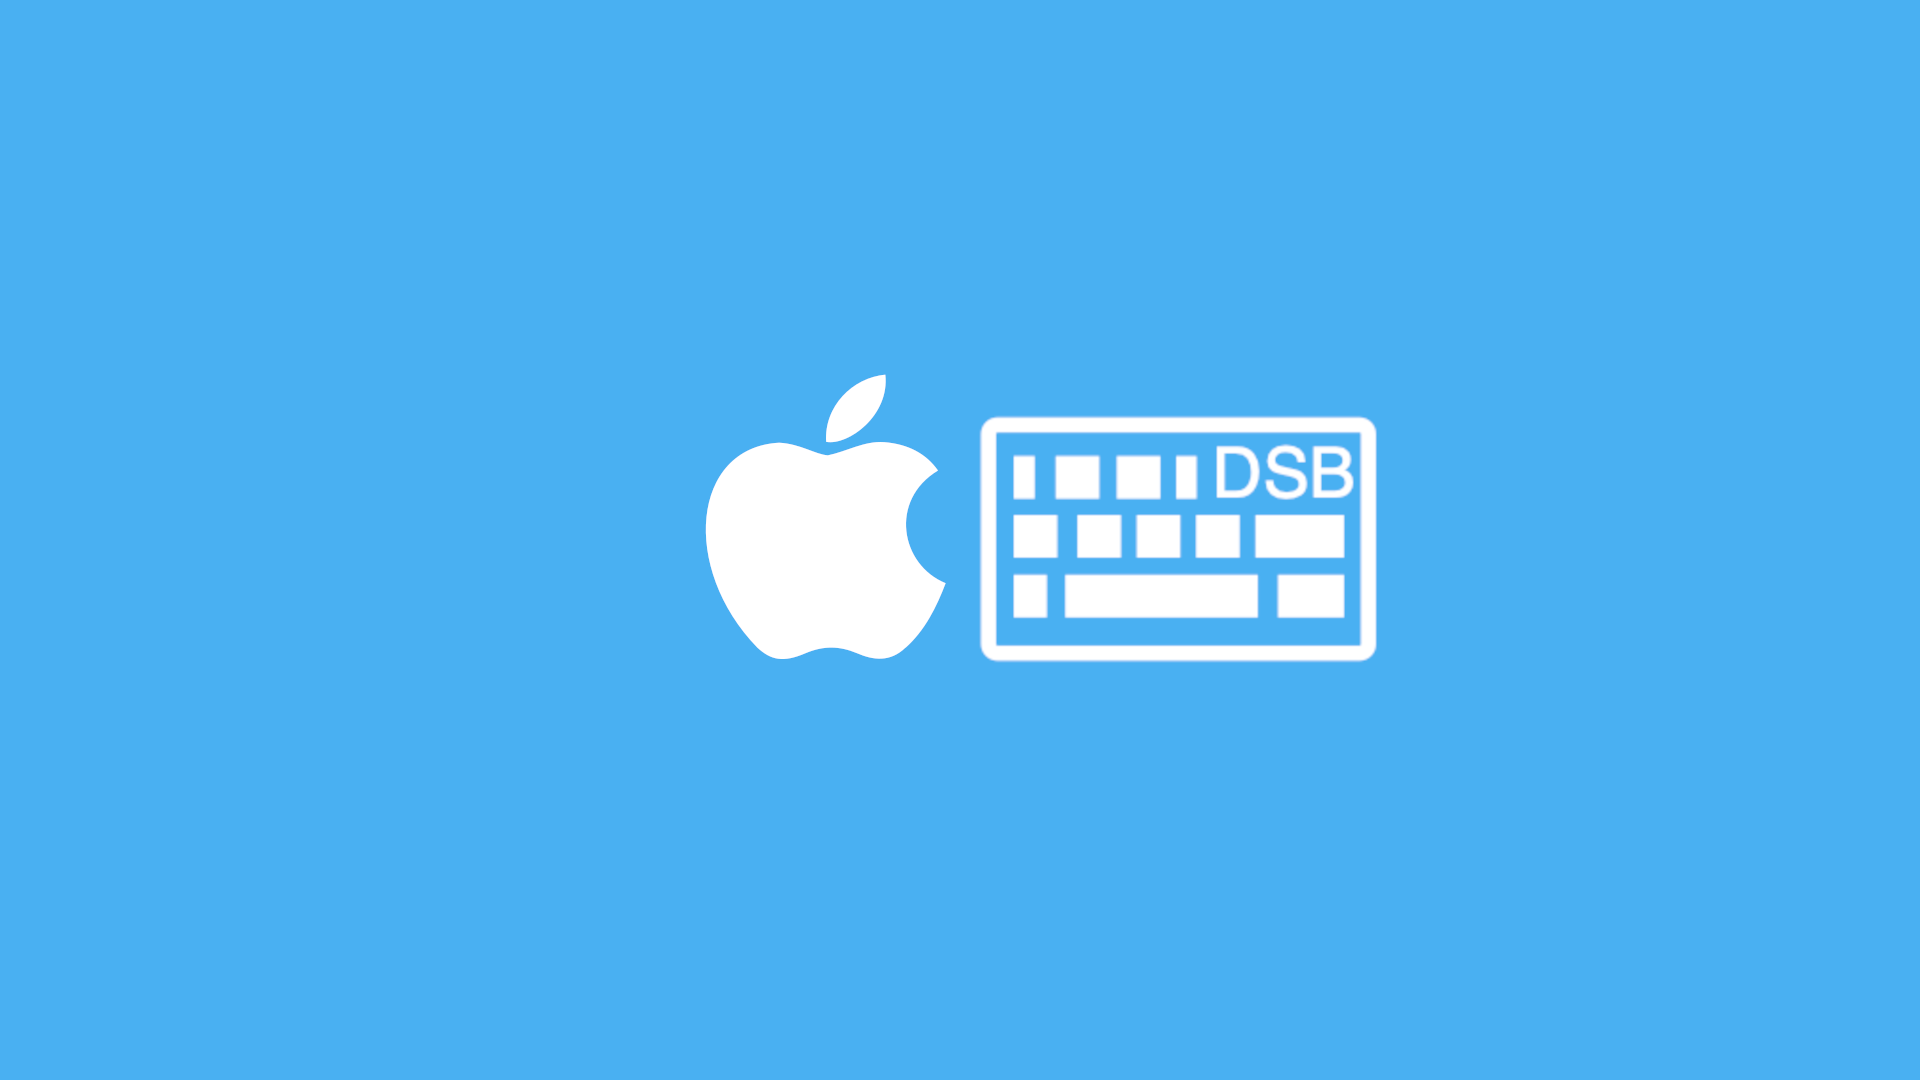 MacOS_tastatura_ds